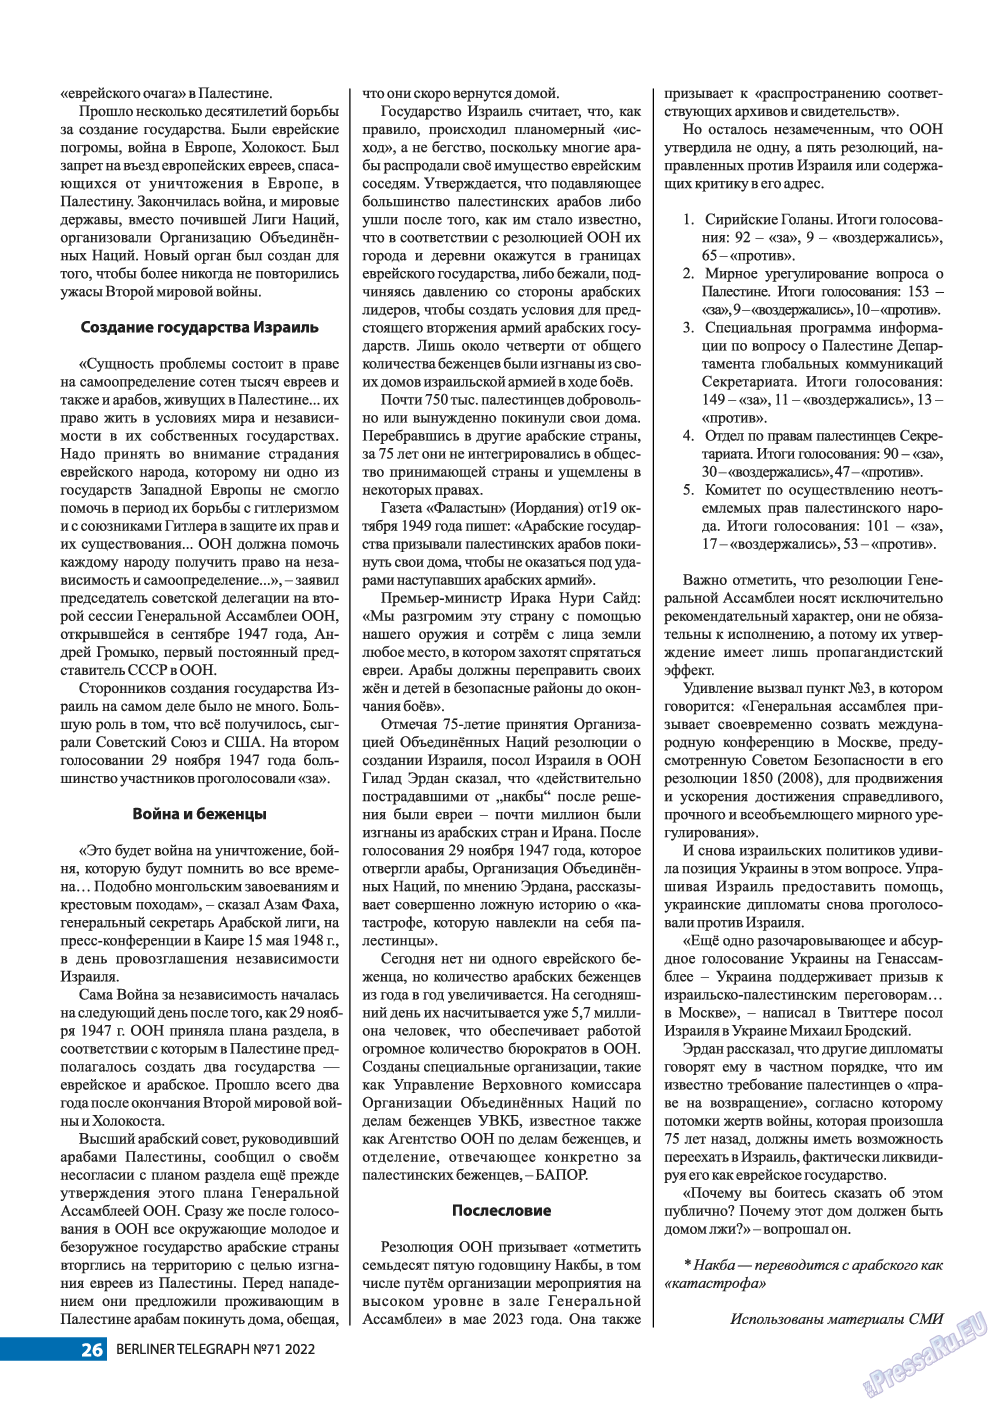 Берлинский телеграф, журнал. 2022 №71 стр.26